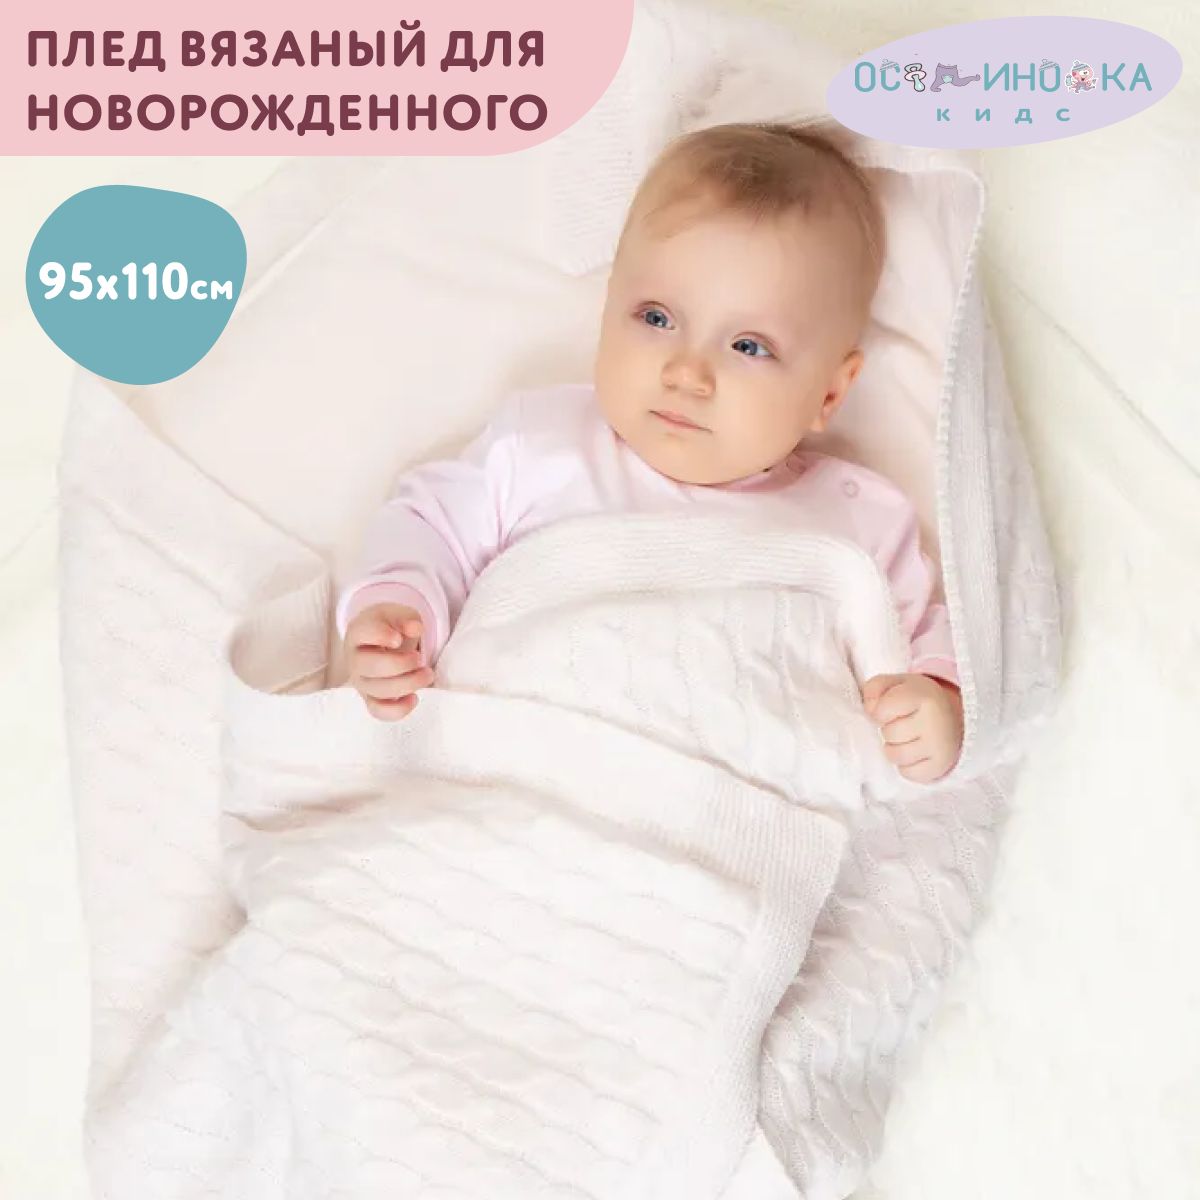 Одеяло для новорожденных своими руками - 7 вариантов с описанием